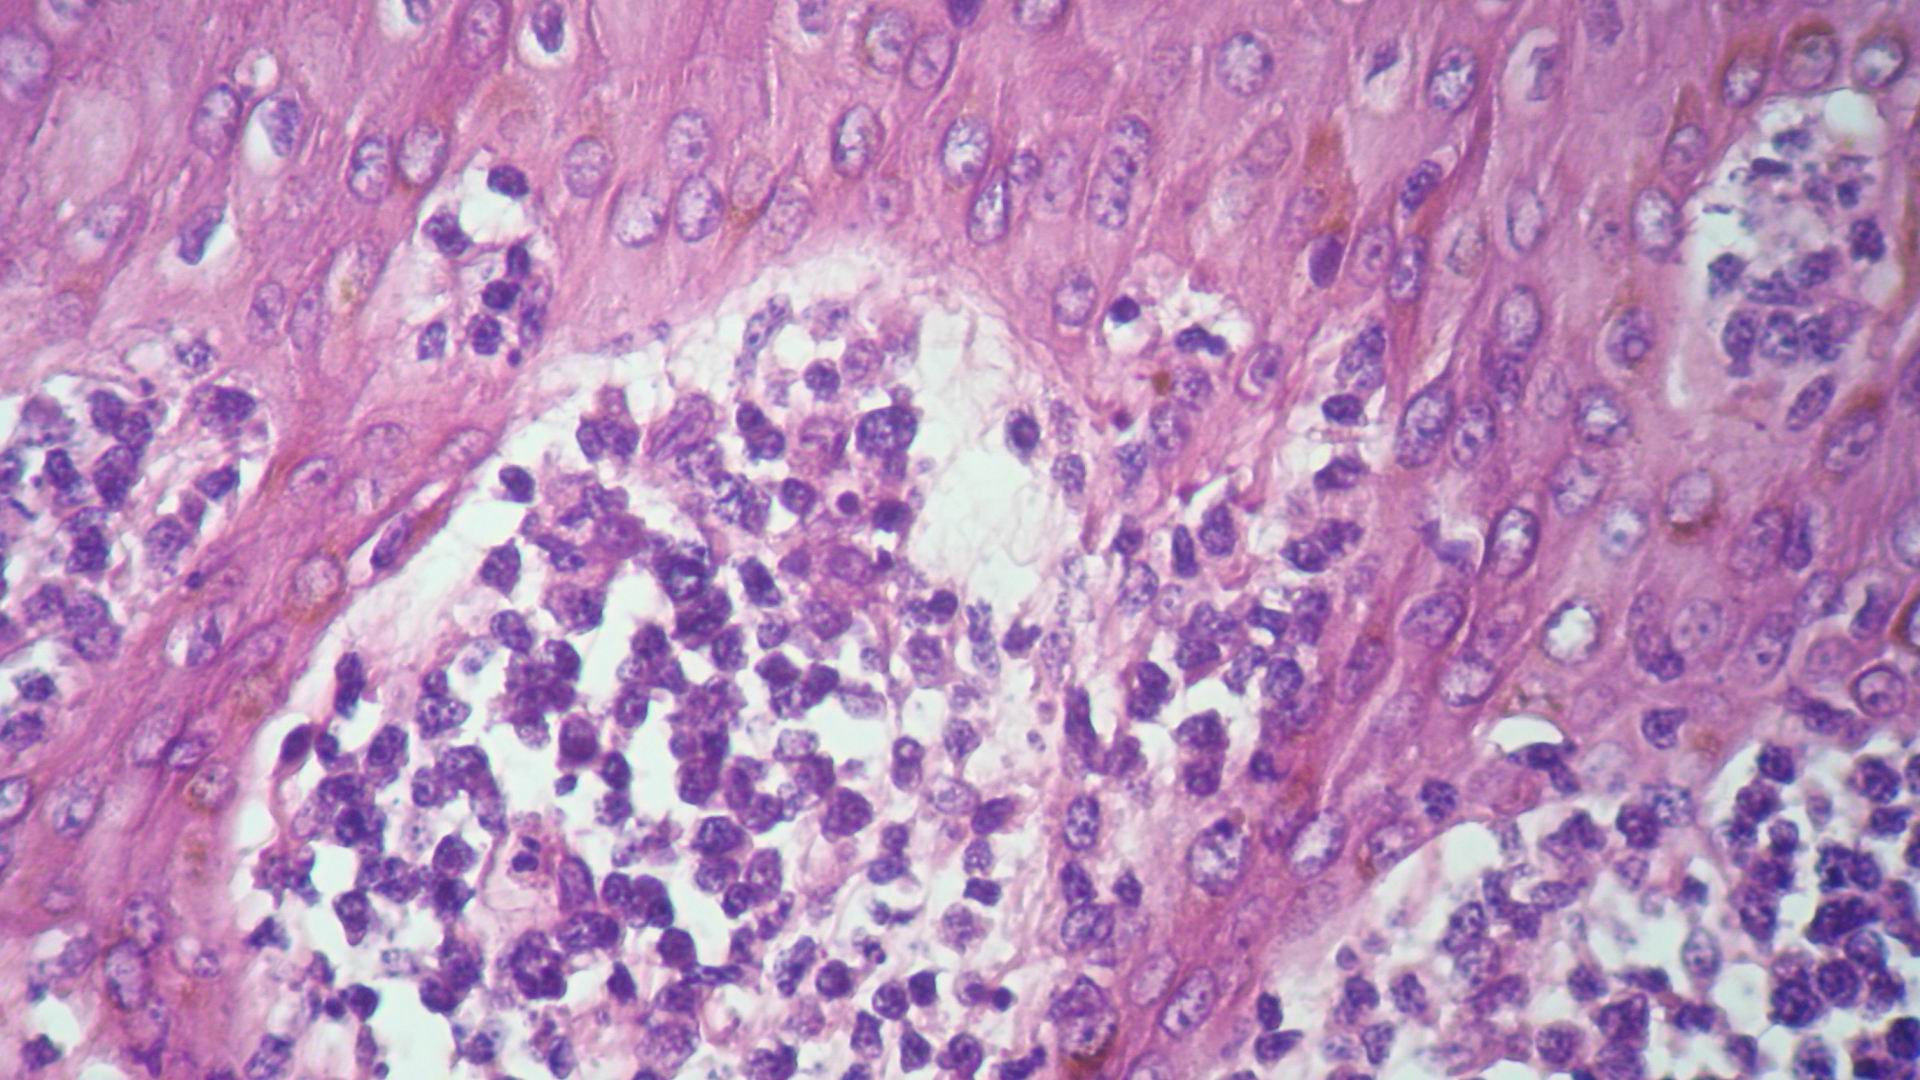 Imagen de Tumores Cutneos Mltilples en Paciente Masculino con antecedente de Tumor Testicular.